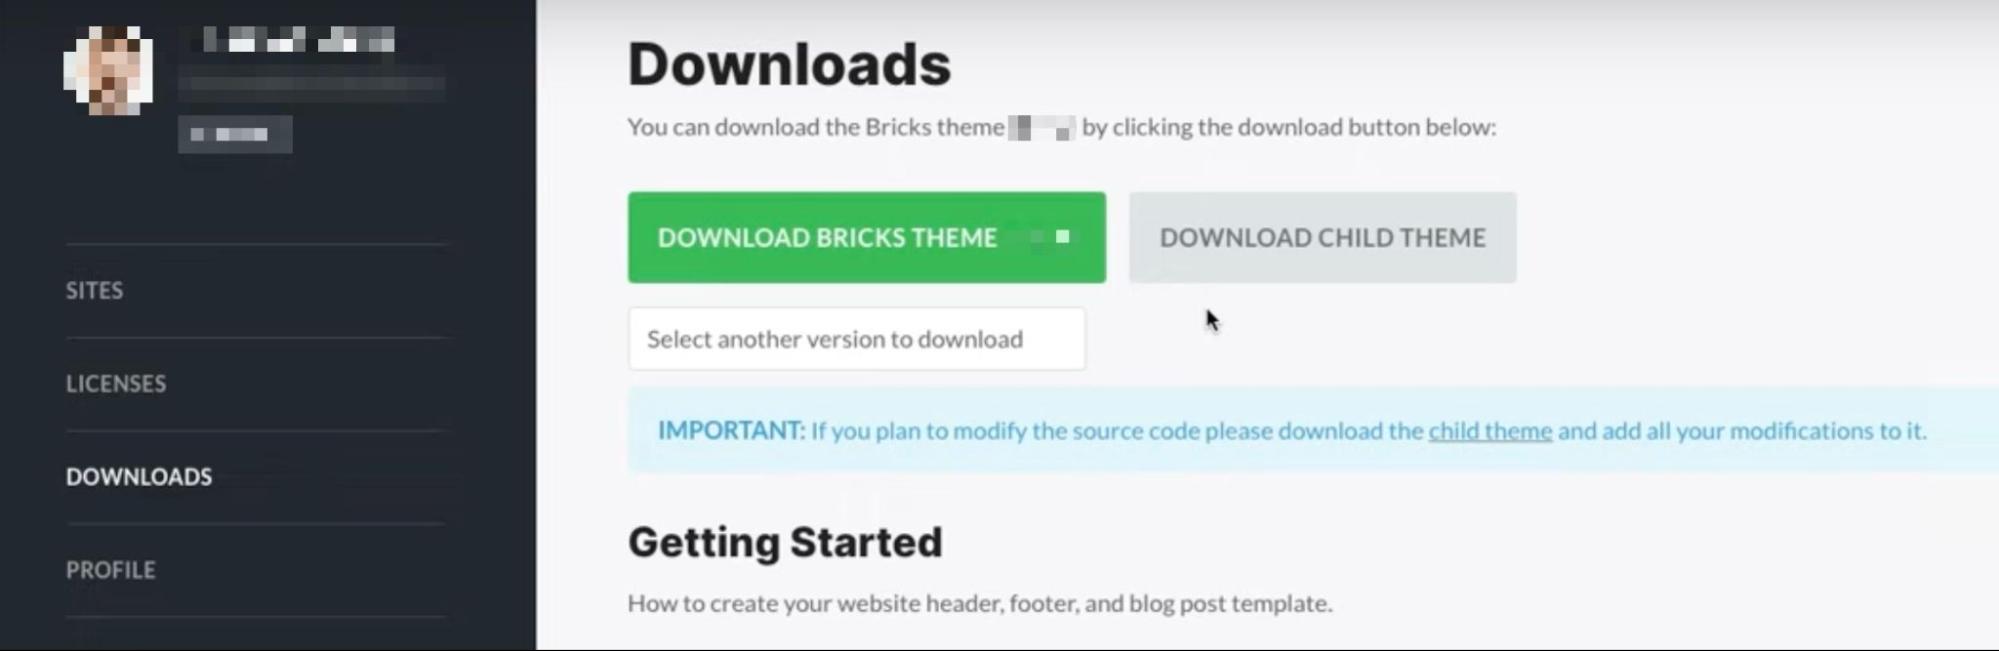 Bricks Dashboard zum Download des Bricks Themes